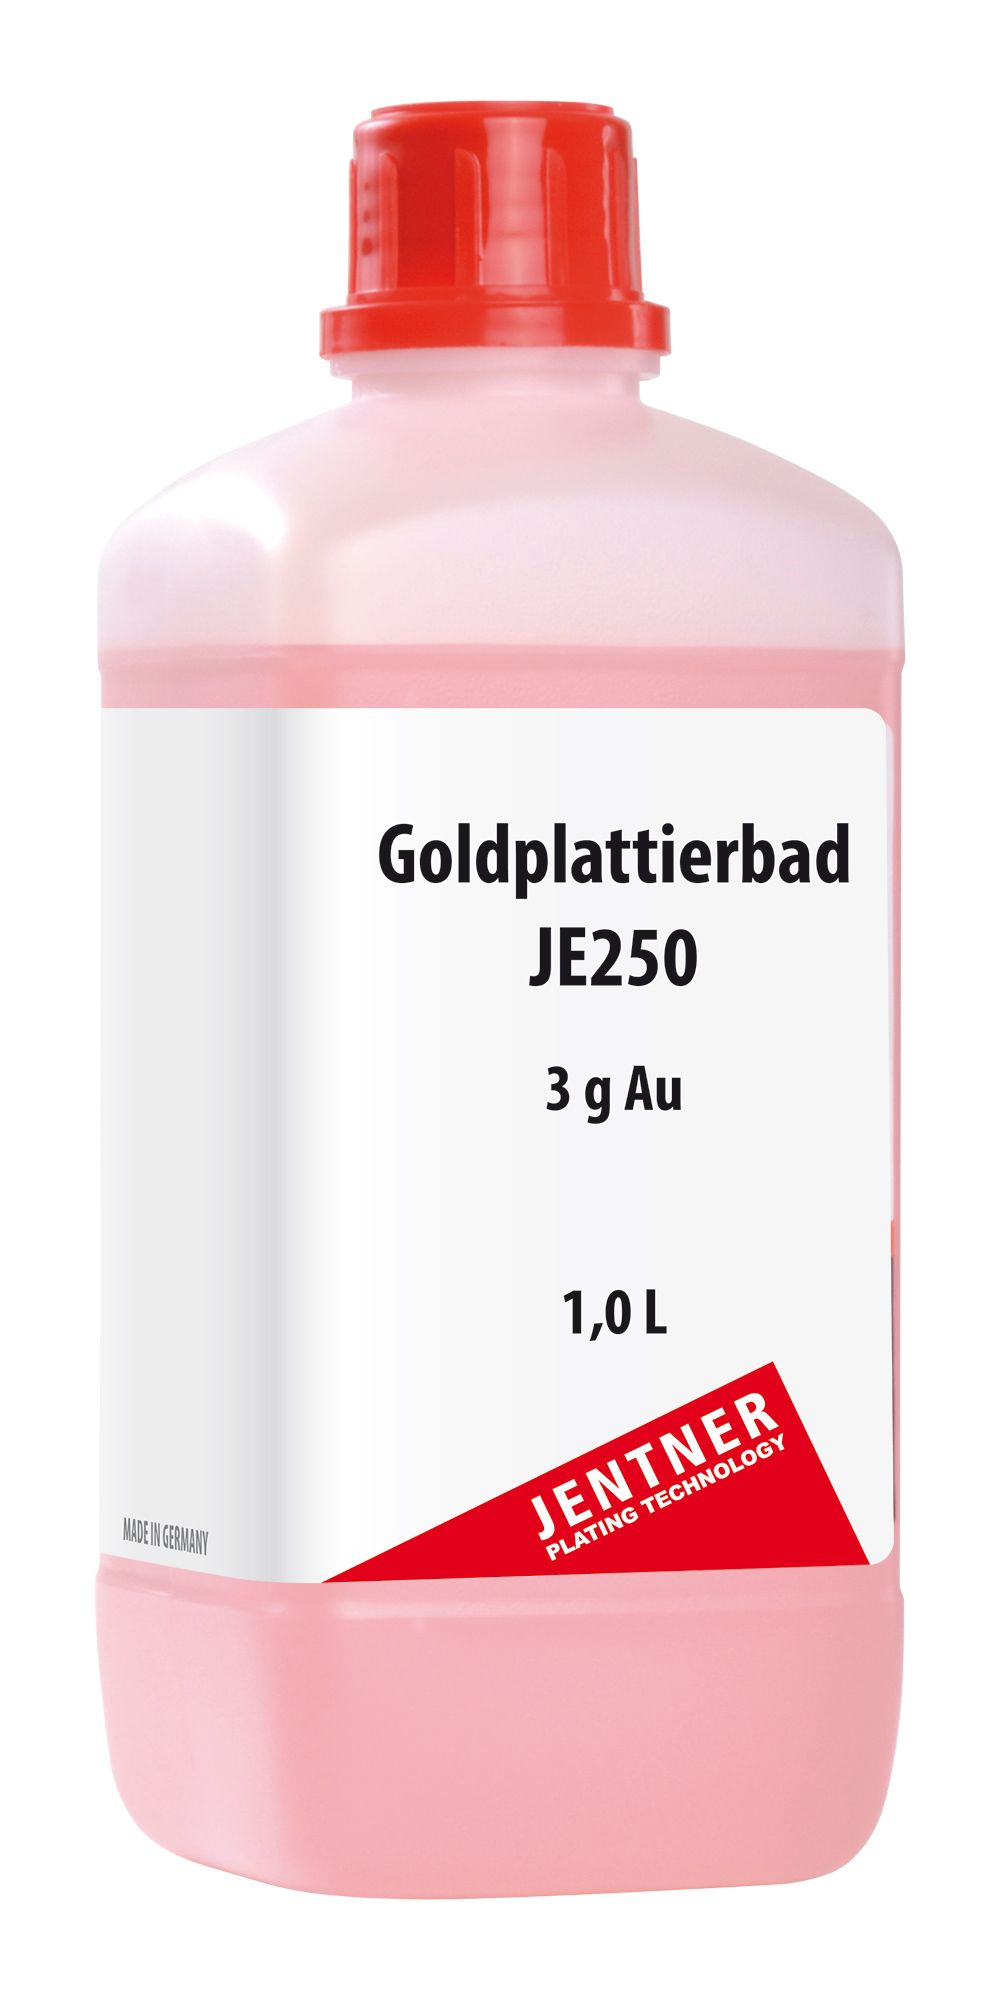 Gold plating bath JE250 - 3 g/L Au